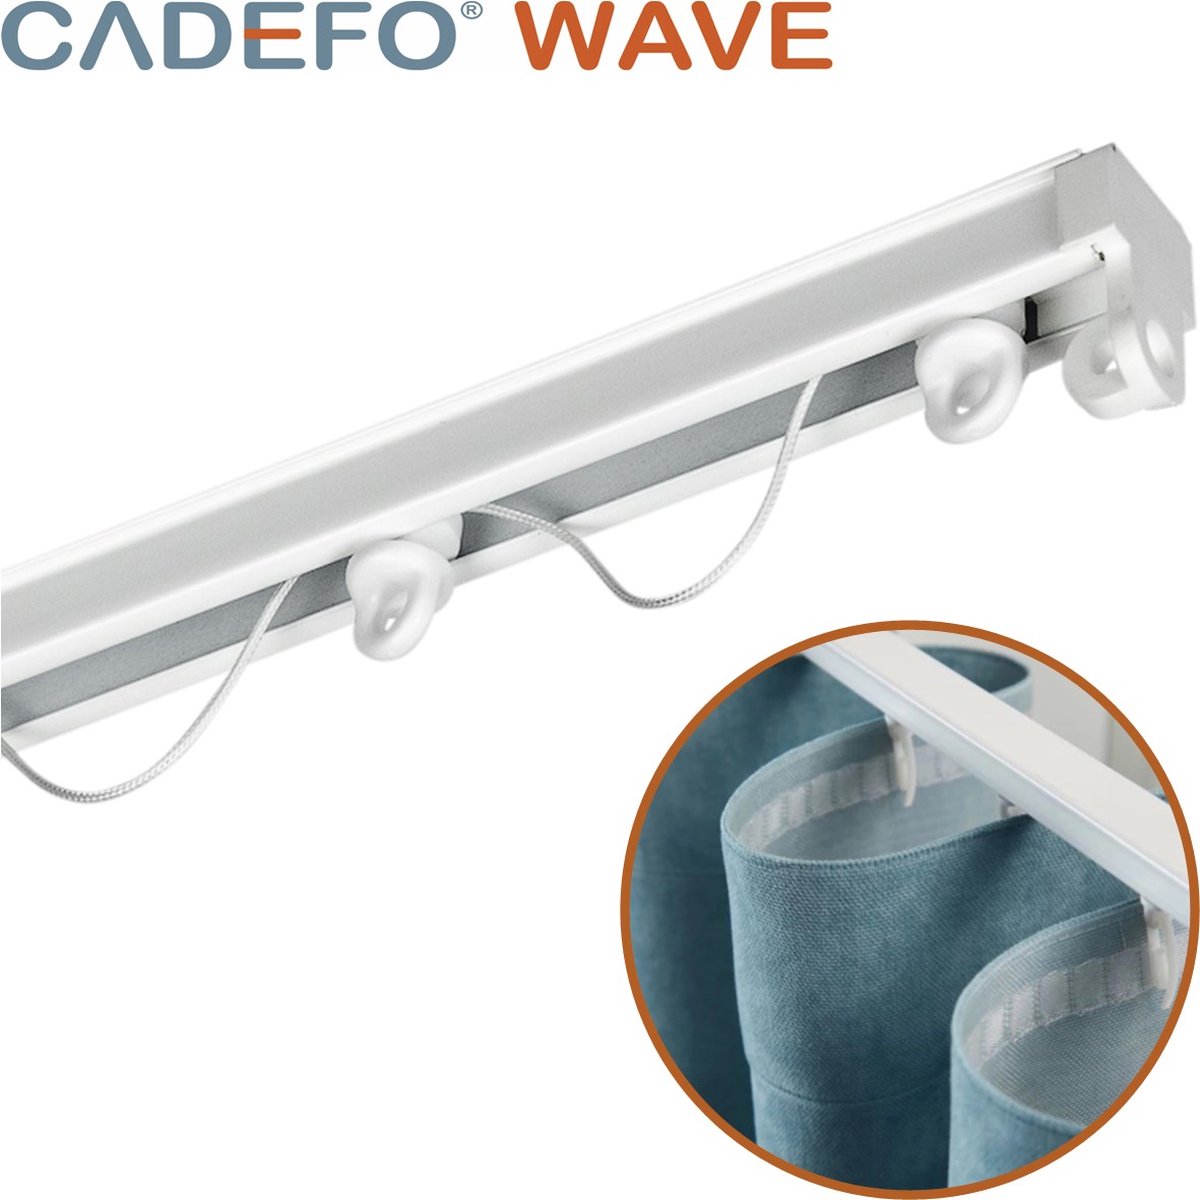 CADEFO WAVE (151 - 200 cm) Gordijnrails - Compleet op maat! - UIT 1 STUK - Leverbaar tot 6 meter - Plafondbevestiging - Lengte 153 cm